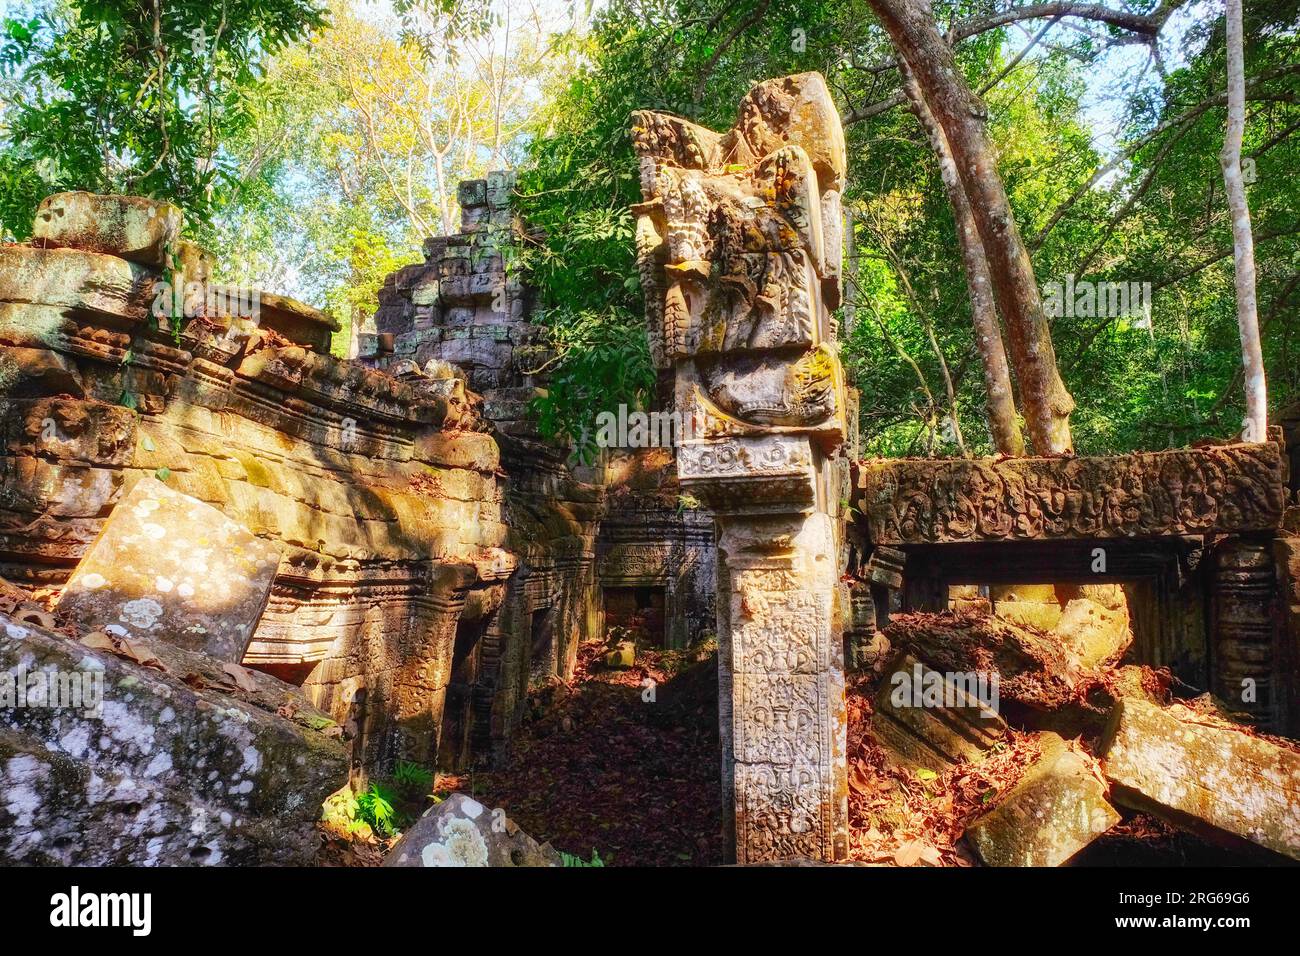 Les secrets de la jungle : la forêt cambodgienne révèle les ruines antiques de la civilisation khmère, façonnant un paysage captivant. Banque D'Images